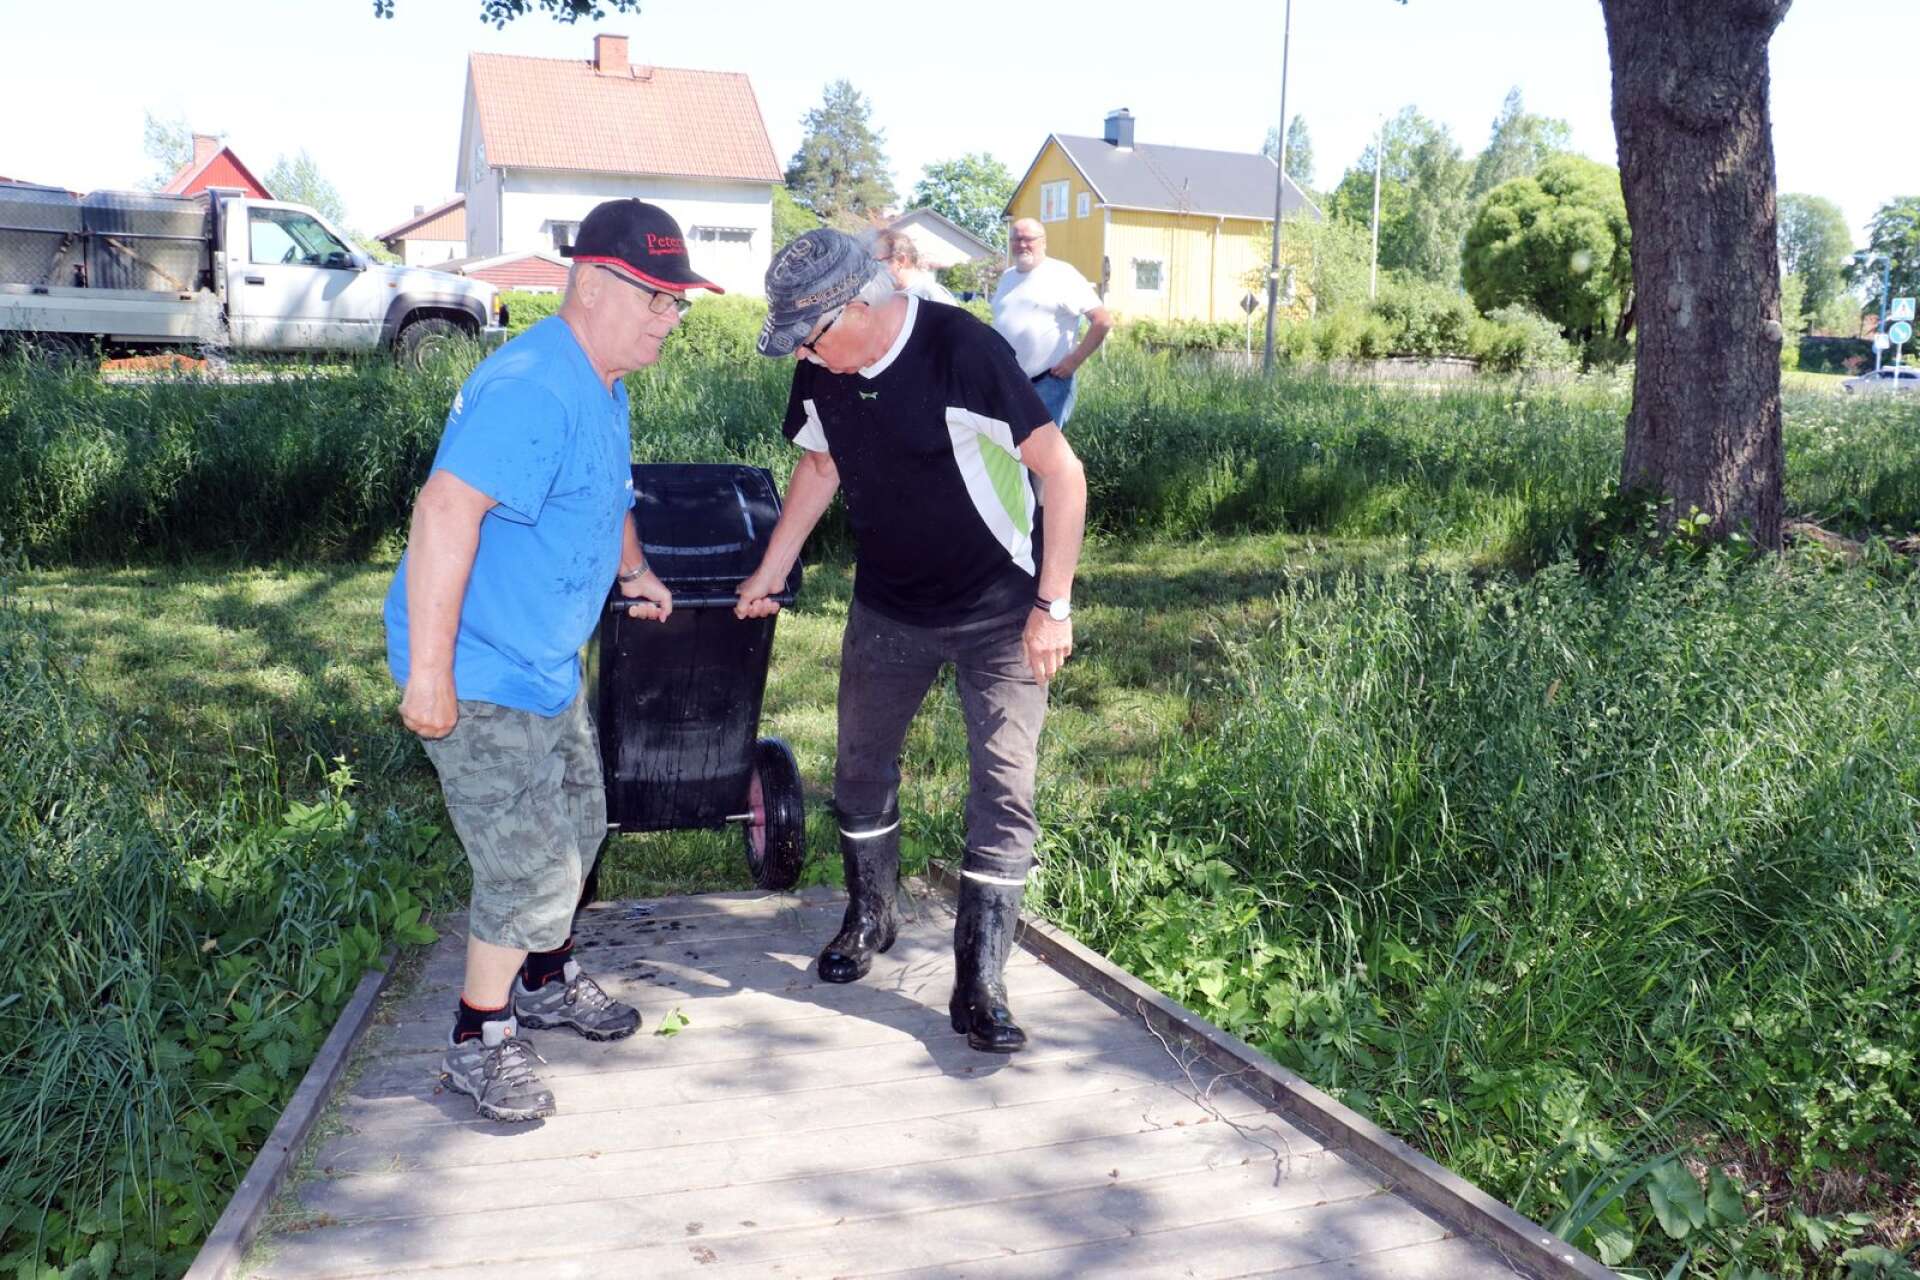 70 kilo regnbåge sattes ut i Skillerälven lagom till sommarlovet. Här ska kommunens alla barn i åldrarna 4-15 år kunna fiska gratis i sommar.